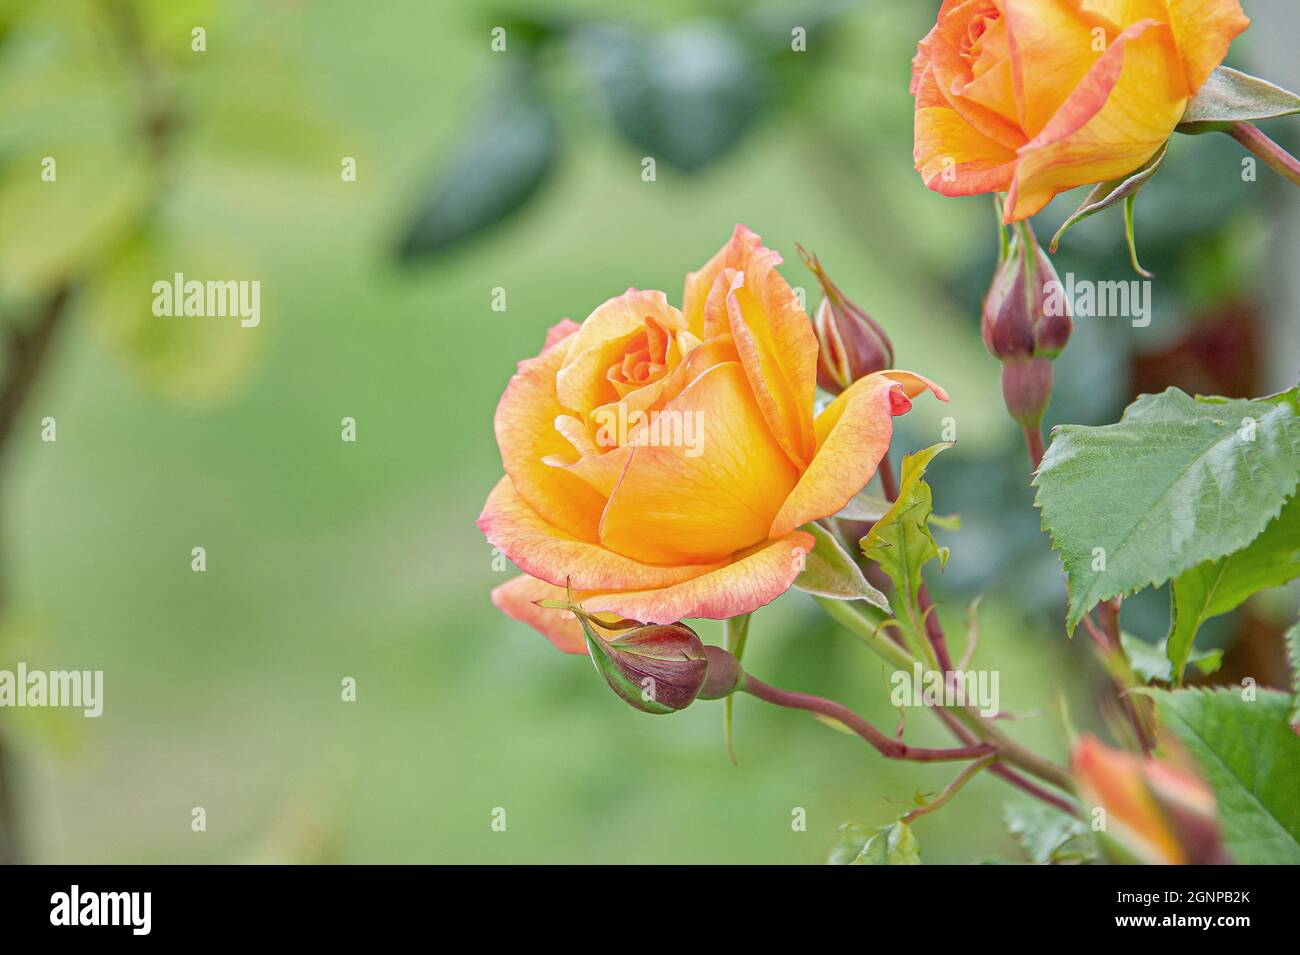 Rose Sahara (Rosa 'Sahara', Rosa Sahara), flowers of cultivar Sahara, Germany Stock Photo